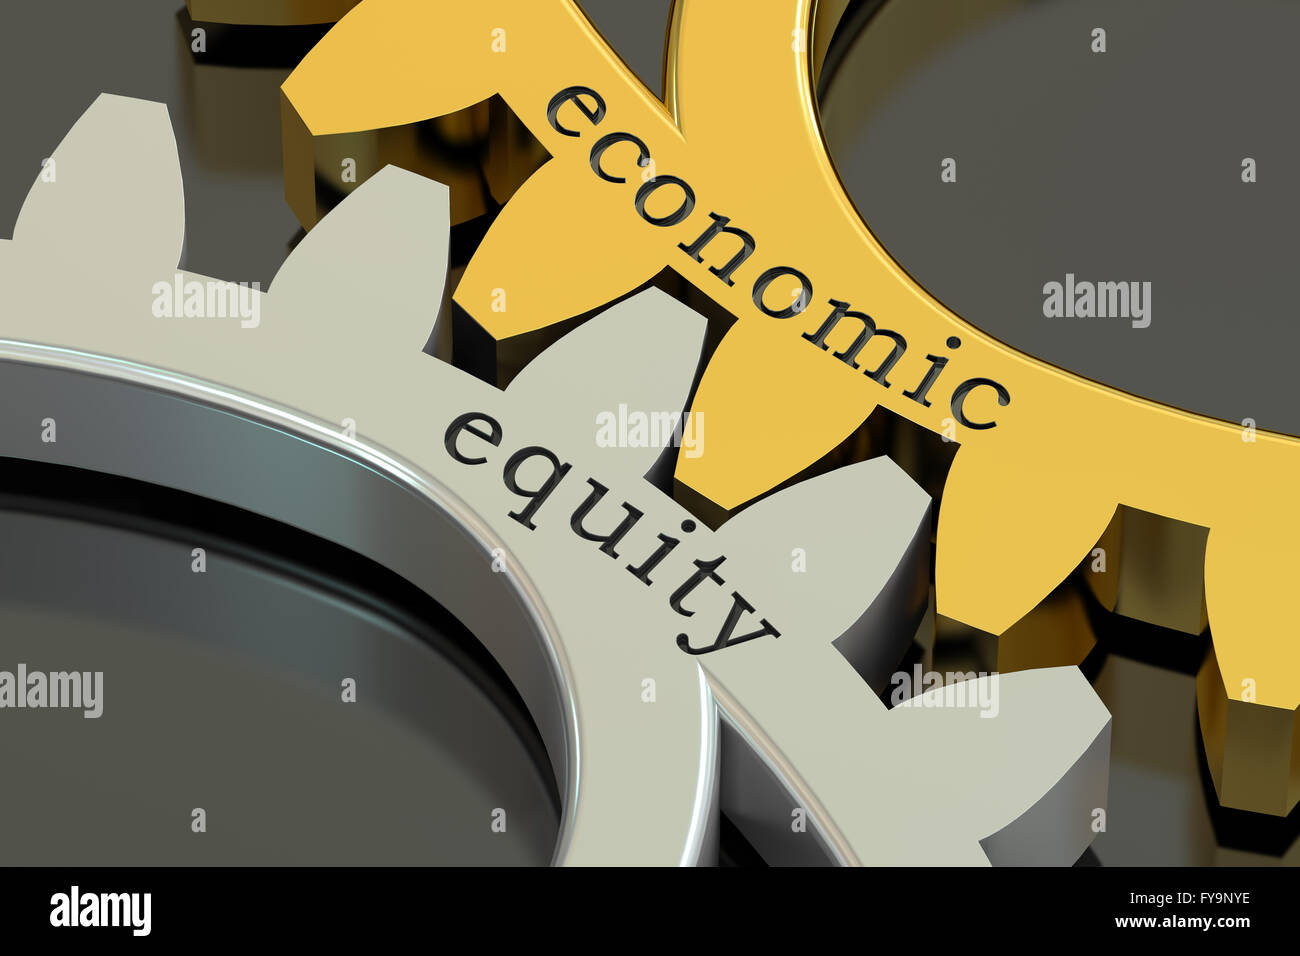 Concepto de igualdad económica en los engranajes, 3D rendering Foto de stock